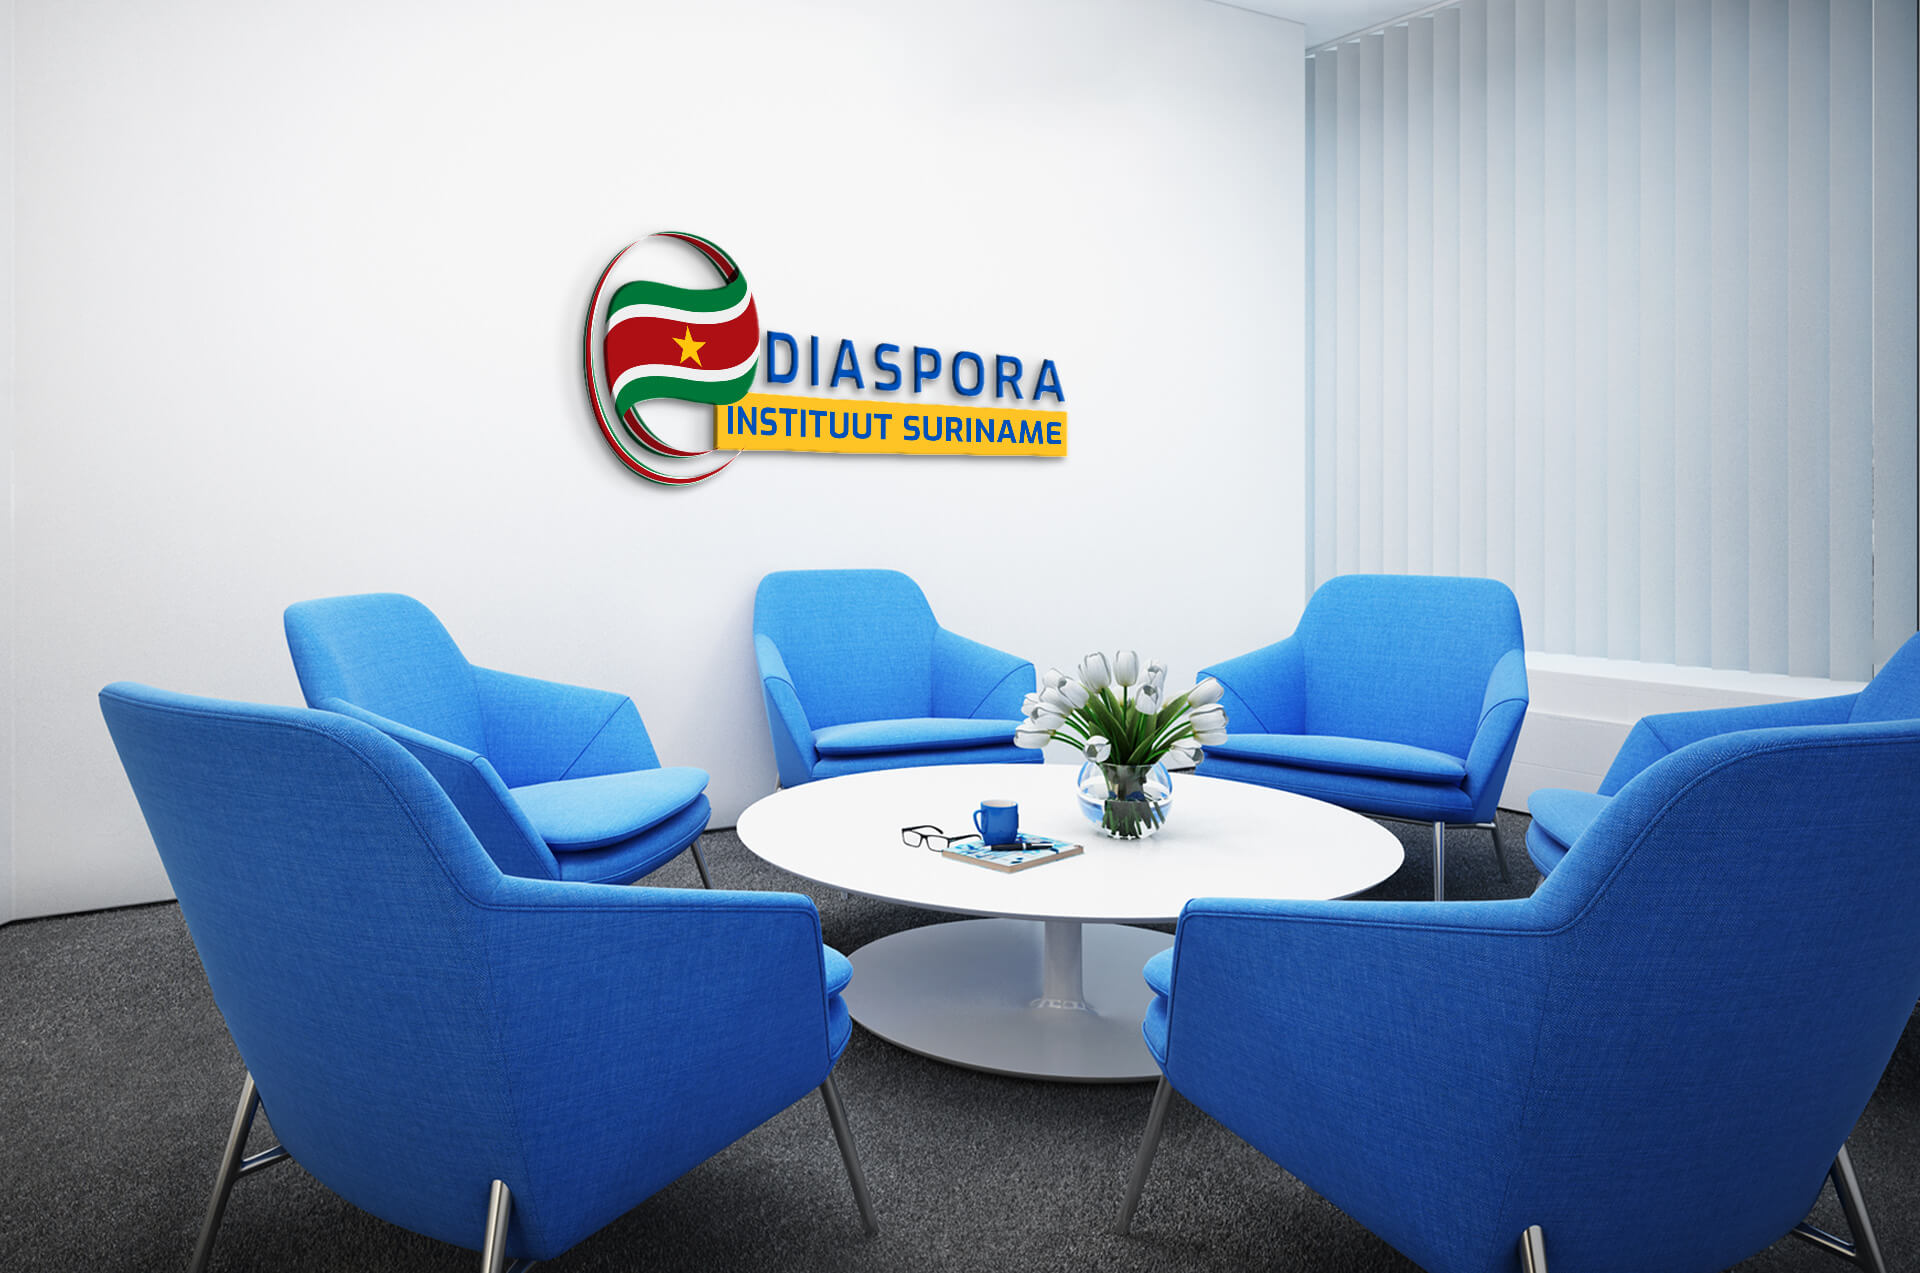 Diaspora Instituut Suriname